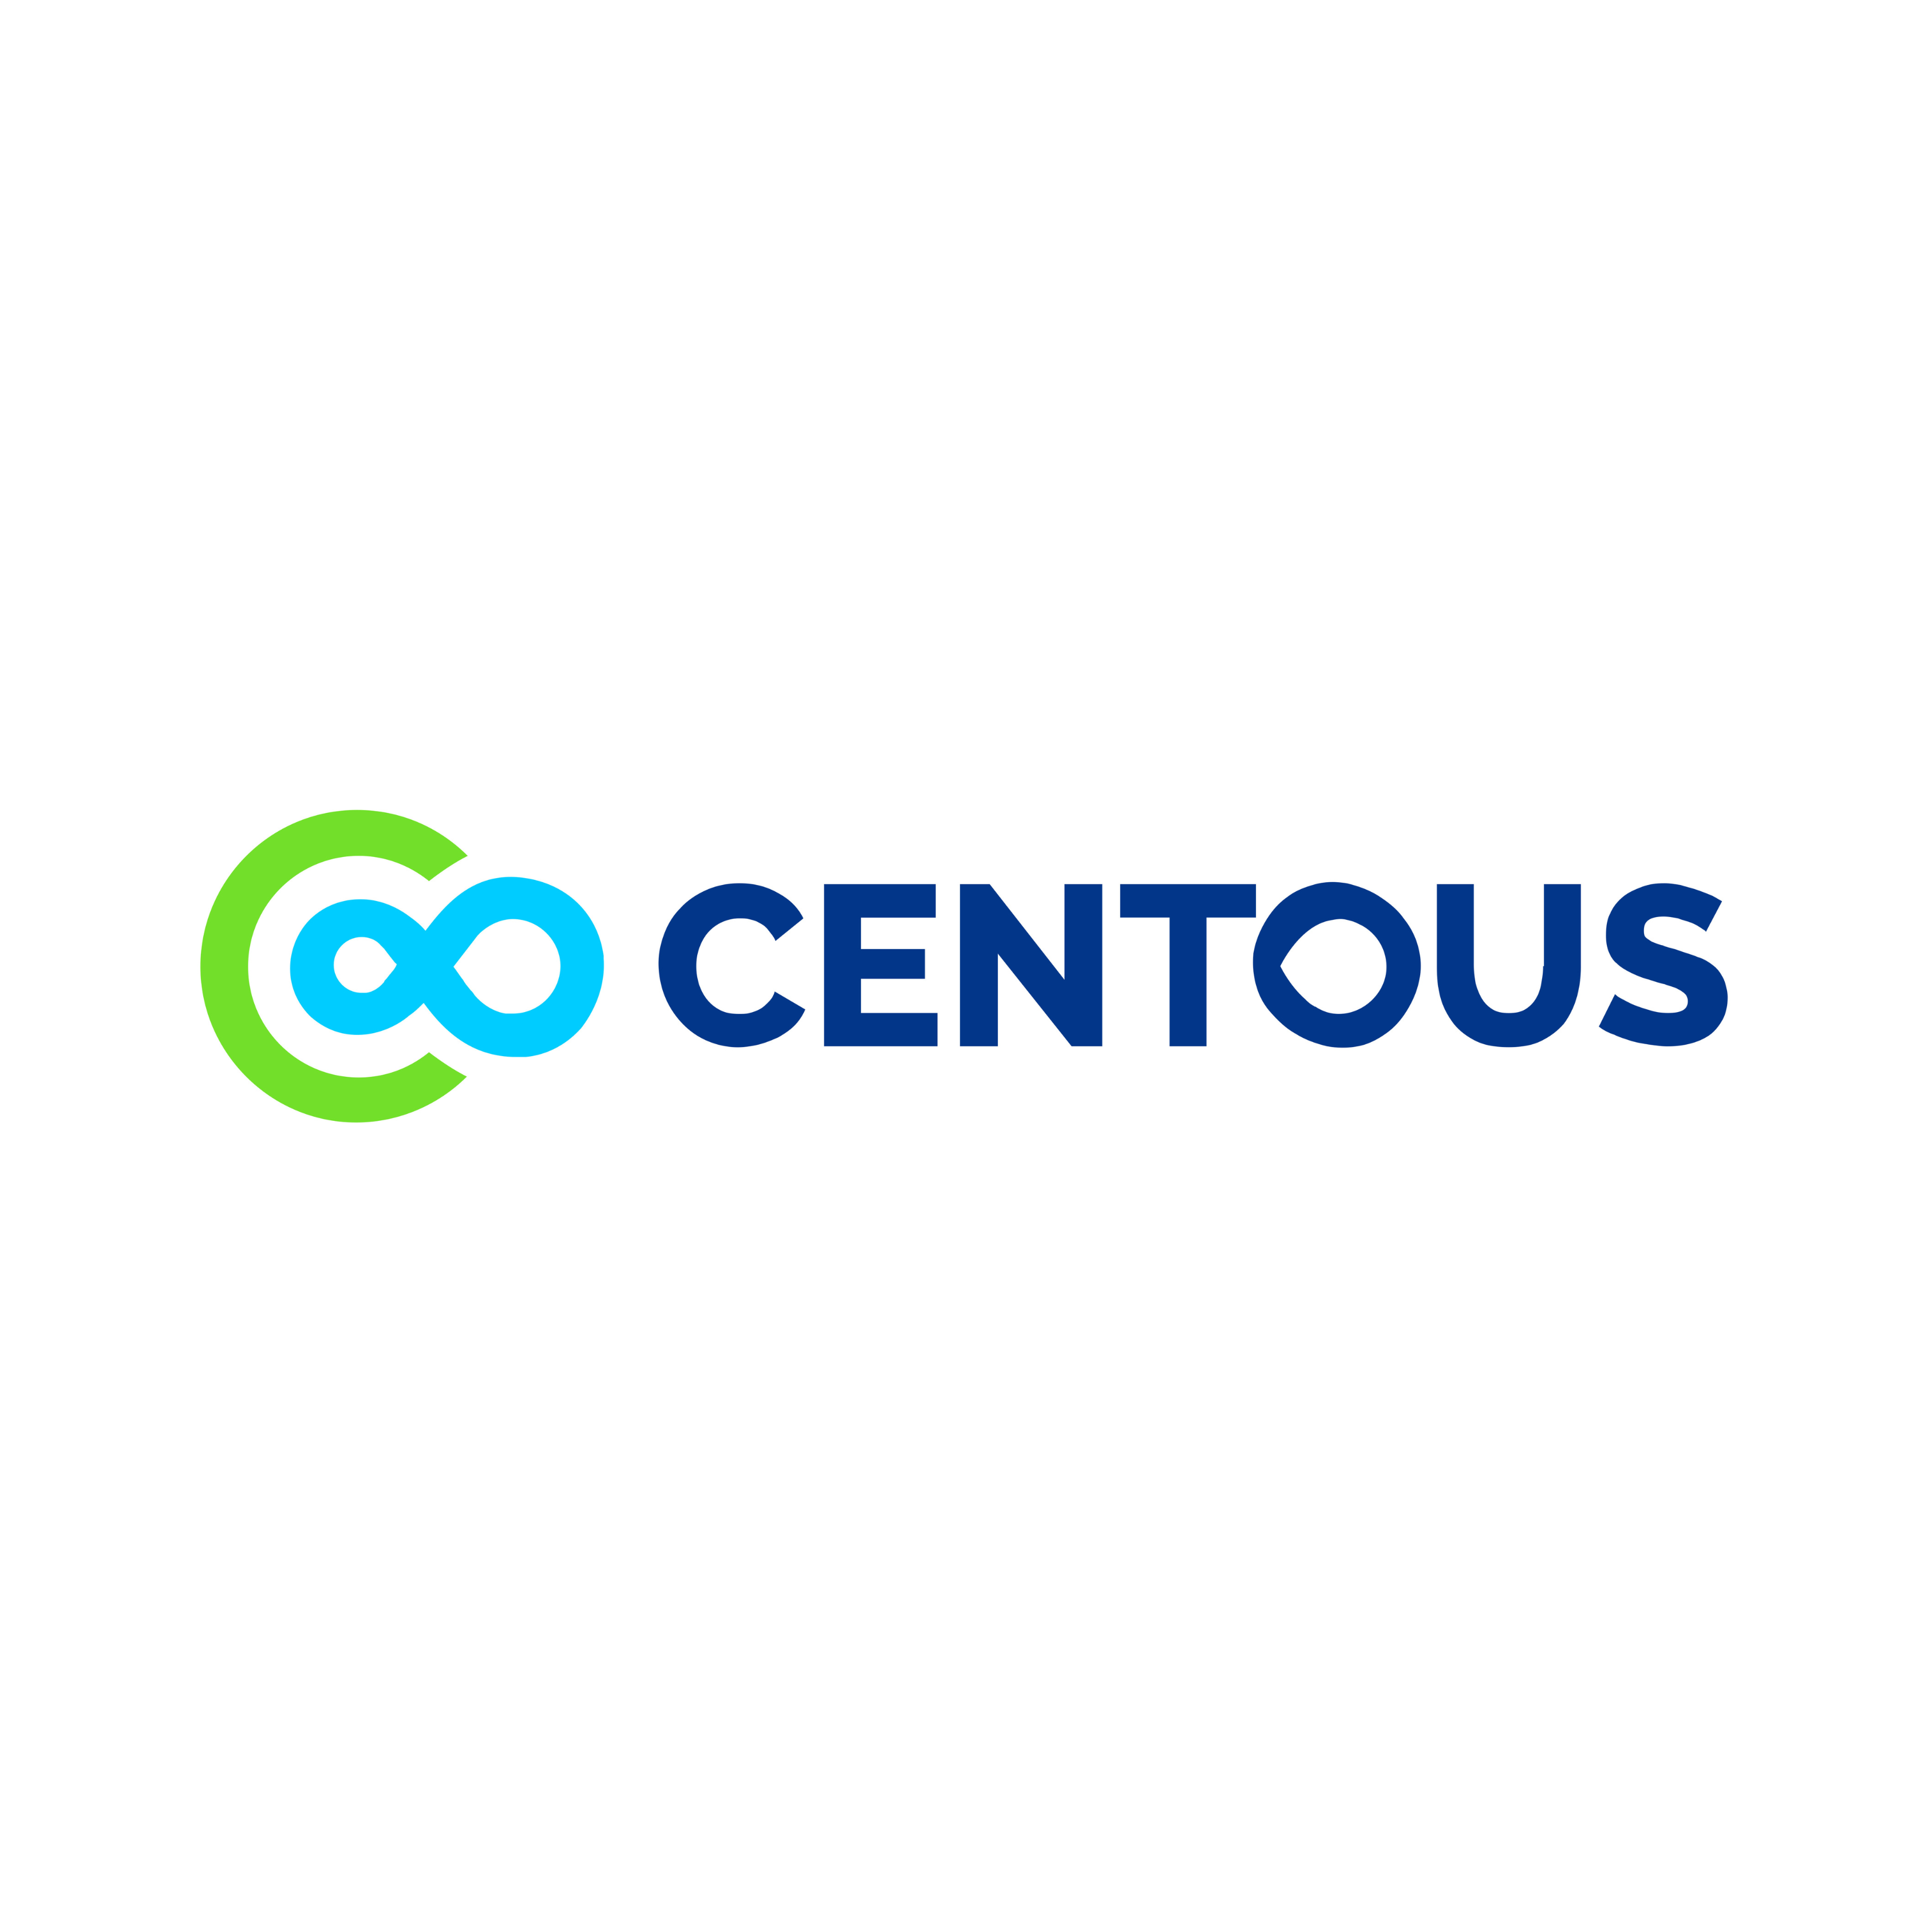 Centous Solutions|Legal Services|Professional Services